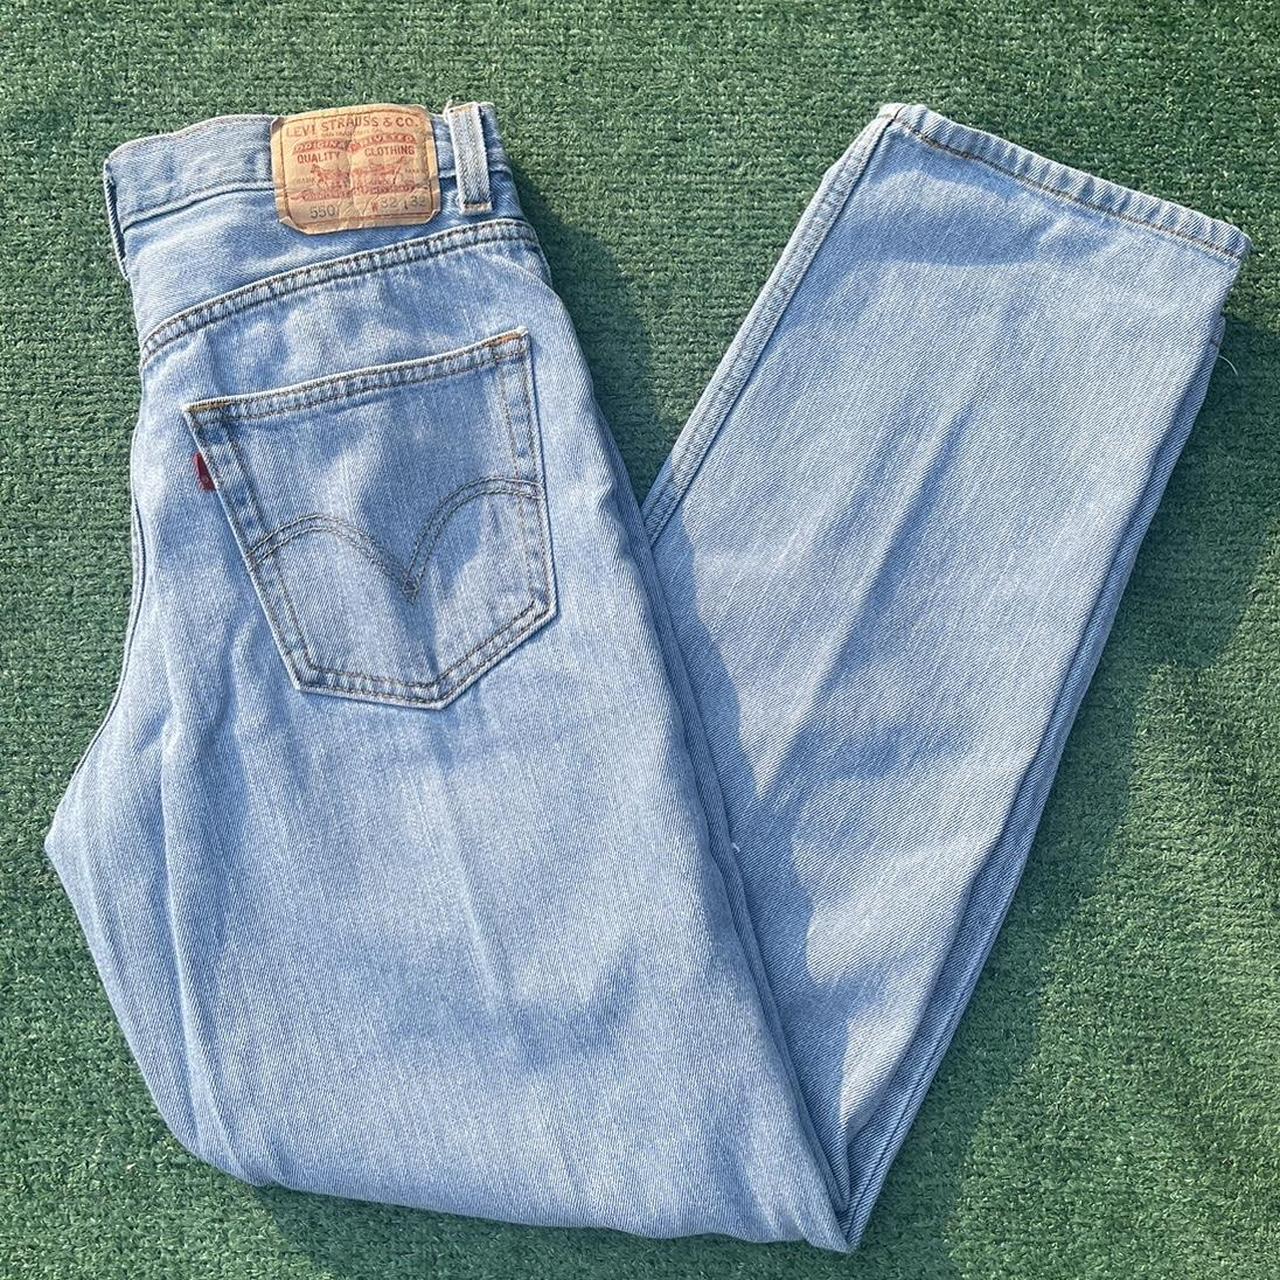 Vintage Light Blue Wash Levi Jeans Waist... - Depop